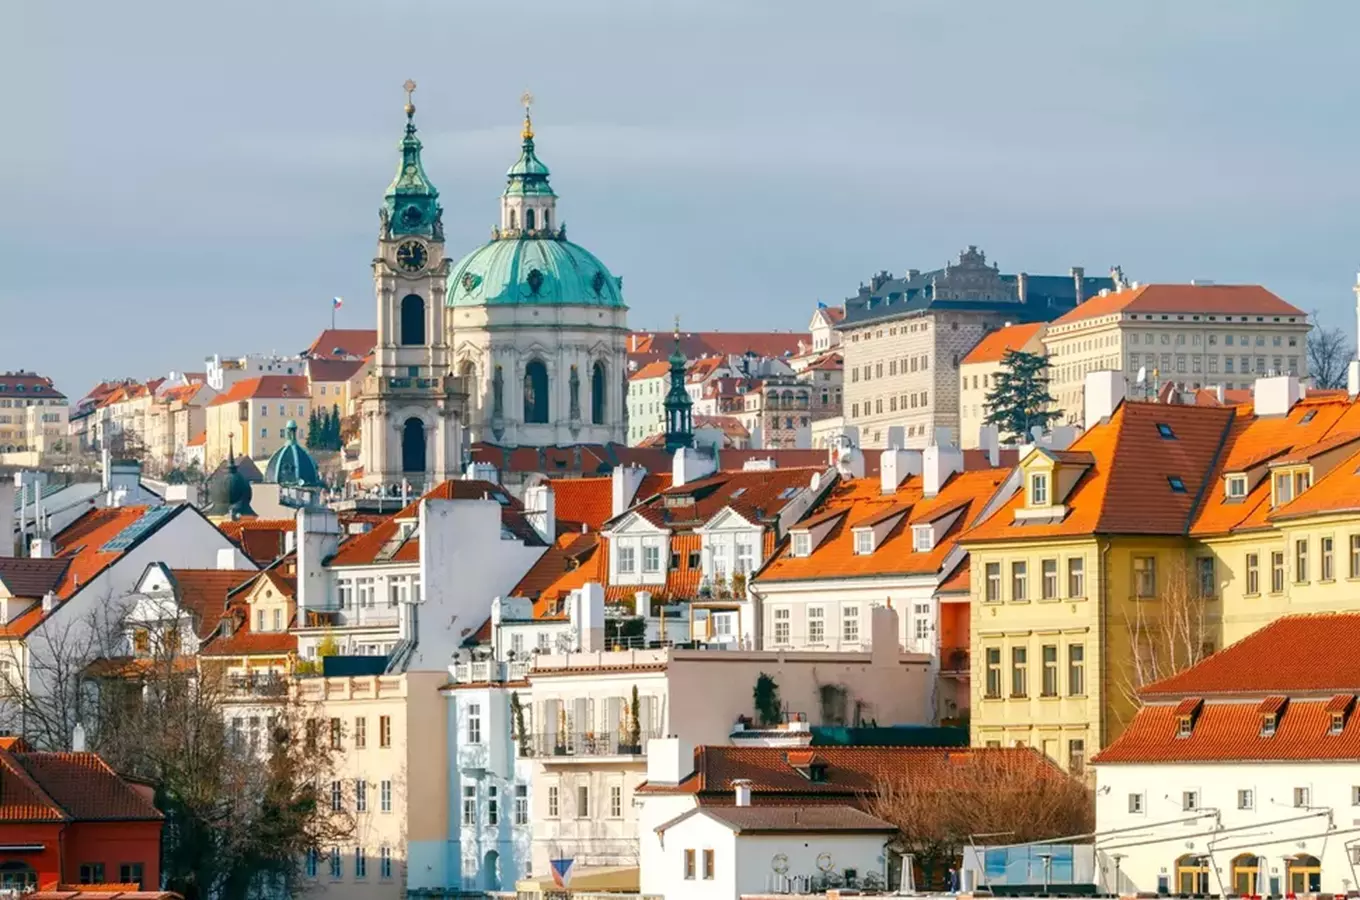 Pražské turistické zajímavosti jsou snadno dostupné veřejnou dopravou